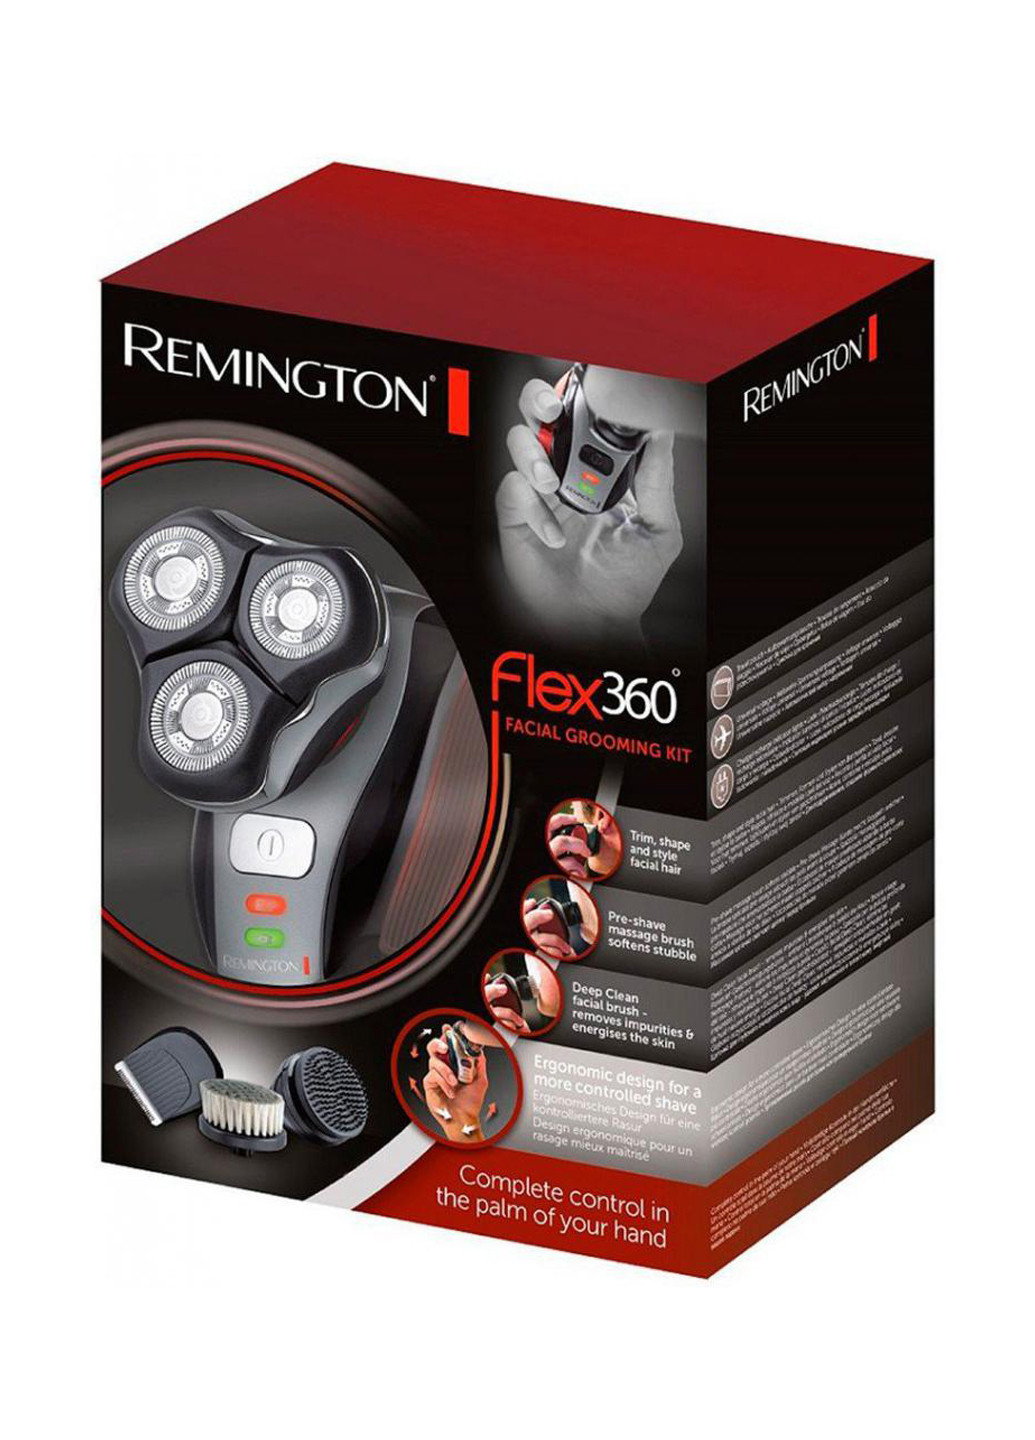 Электробритва Flex360 groom kit Remington xr1410 (155481205)